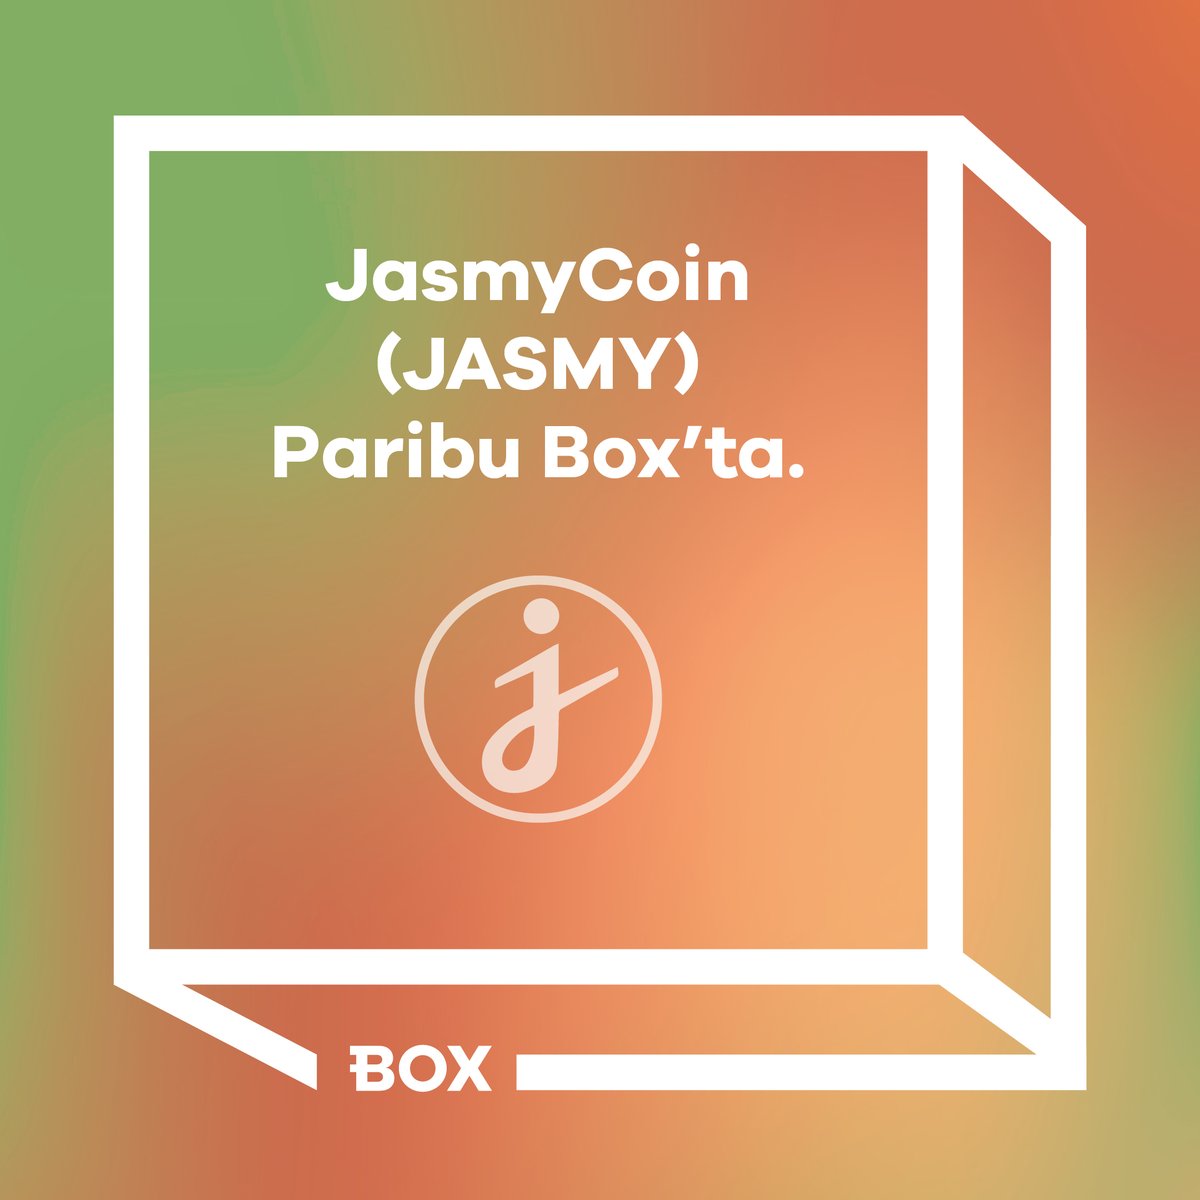 Paribu Box’ta JasmyCoin (JASMY) yatırma işlemleri başladı. Bugün 15.30 itibarıyla alım satım işlemlerinizi gerçekleştirebilirsiniz. Paribu Box hakkında detaylı bilgi almak için⬇️ paribu.com/blog/haberler/…